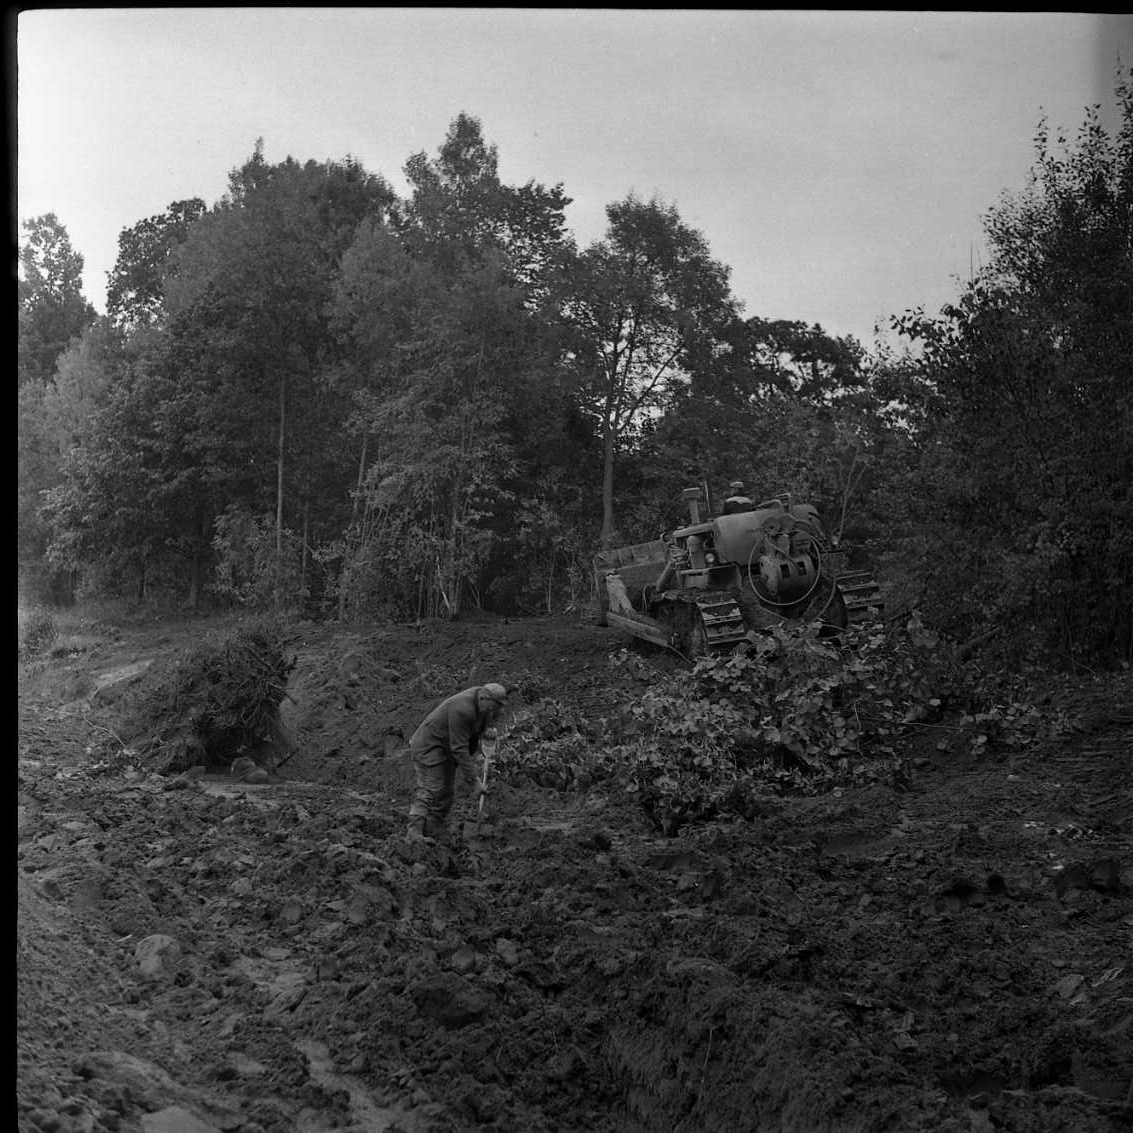 Ombyggnad av idrottsplatsen på Åsavallen, Grännaberget. I bild syns en Caterpillar i arbete och man som gräver med spade.